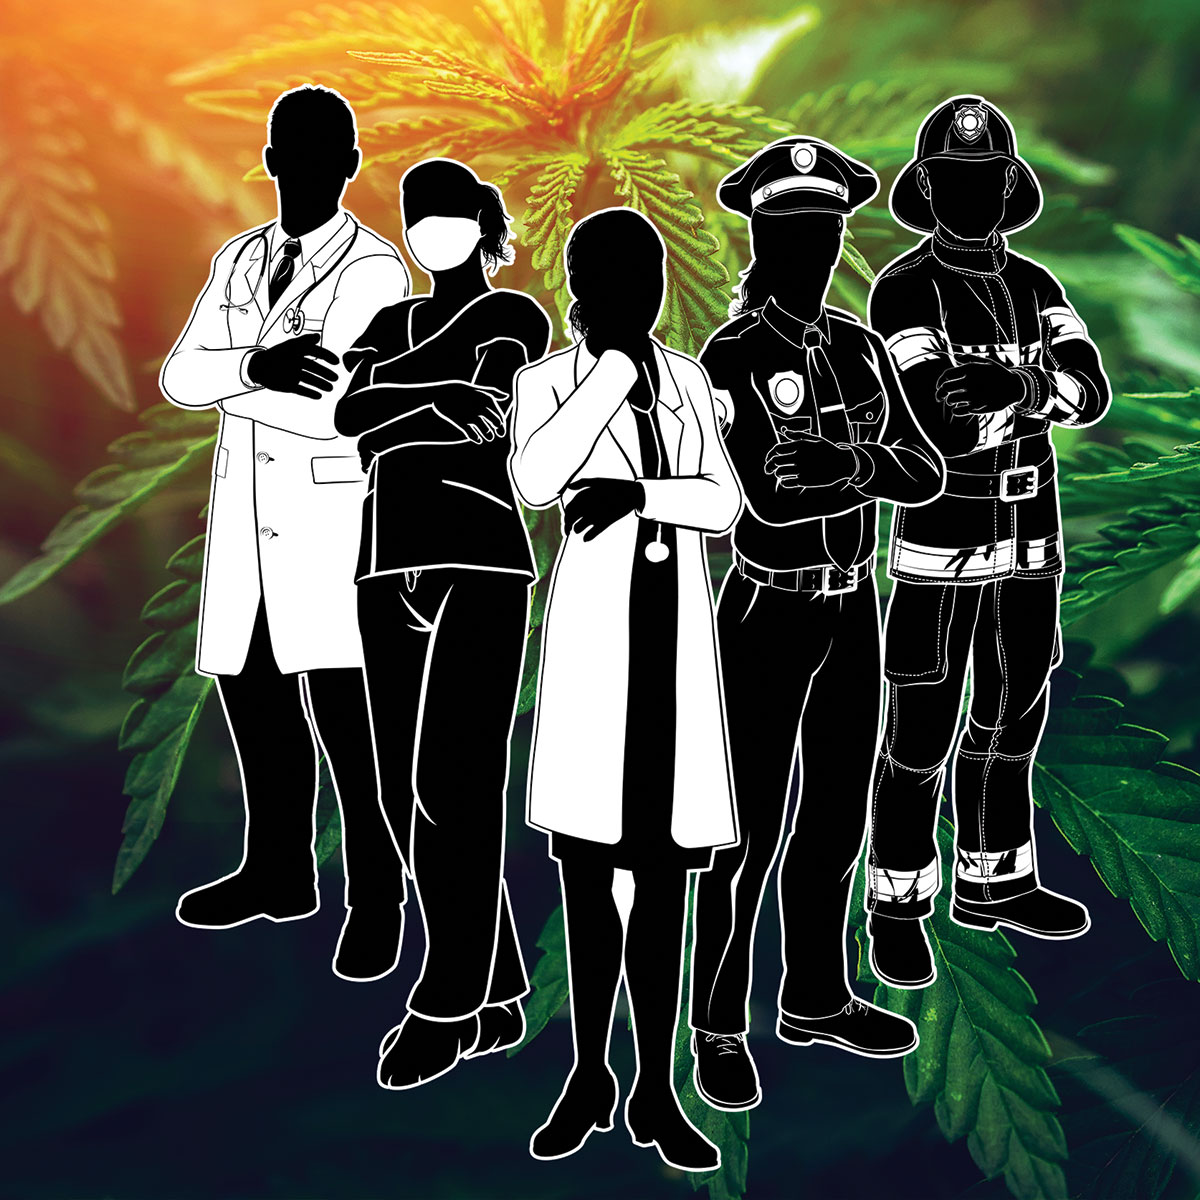 Veterans and first responders using marijuana